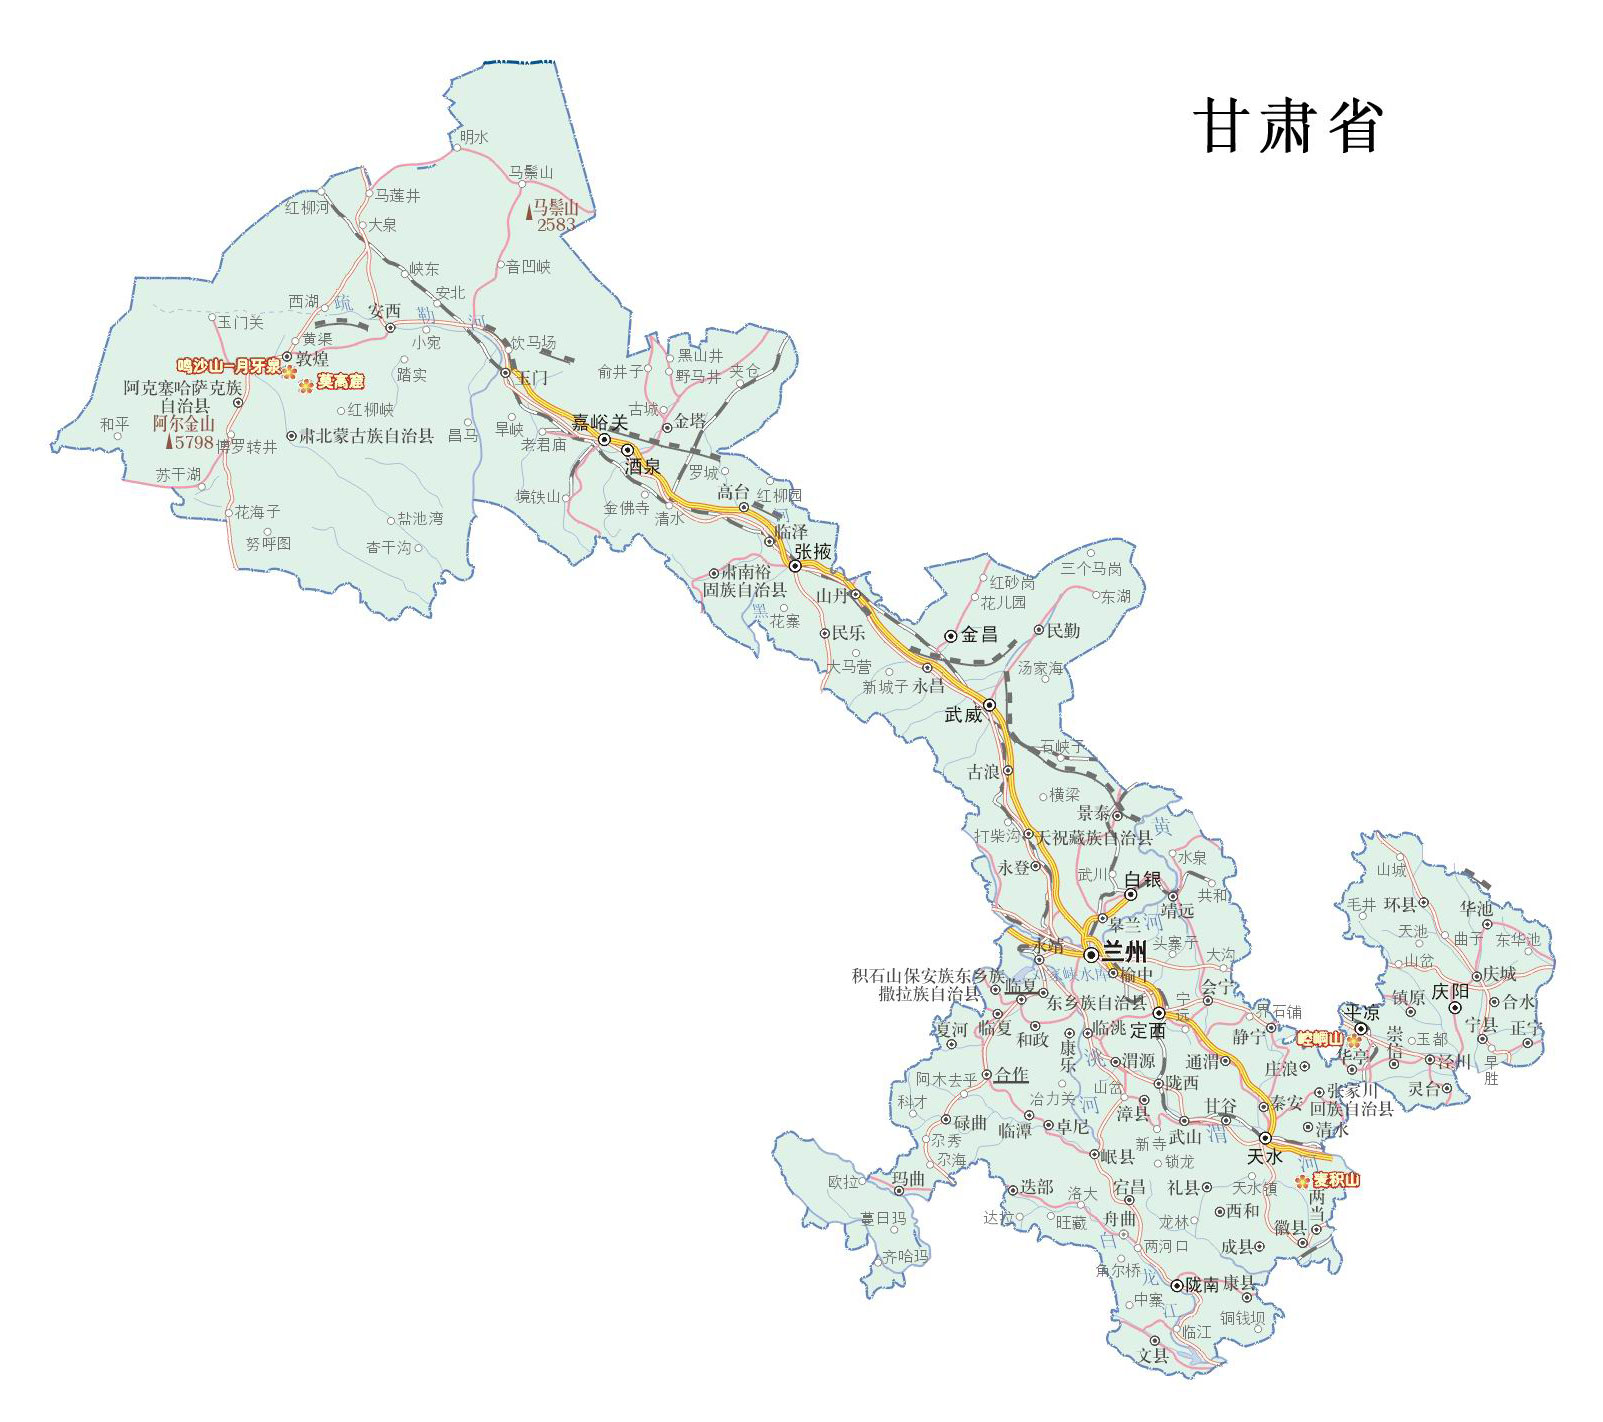 甘肃地图区版; 甘肃重点旅游景区分布图;; 甘肃重点旅游景区分布图